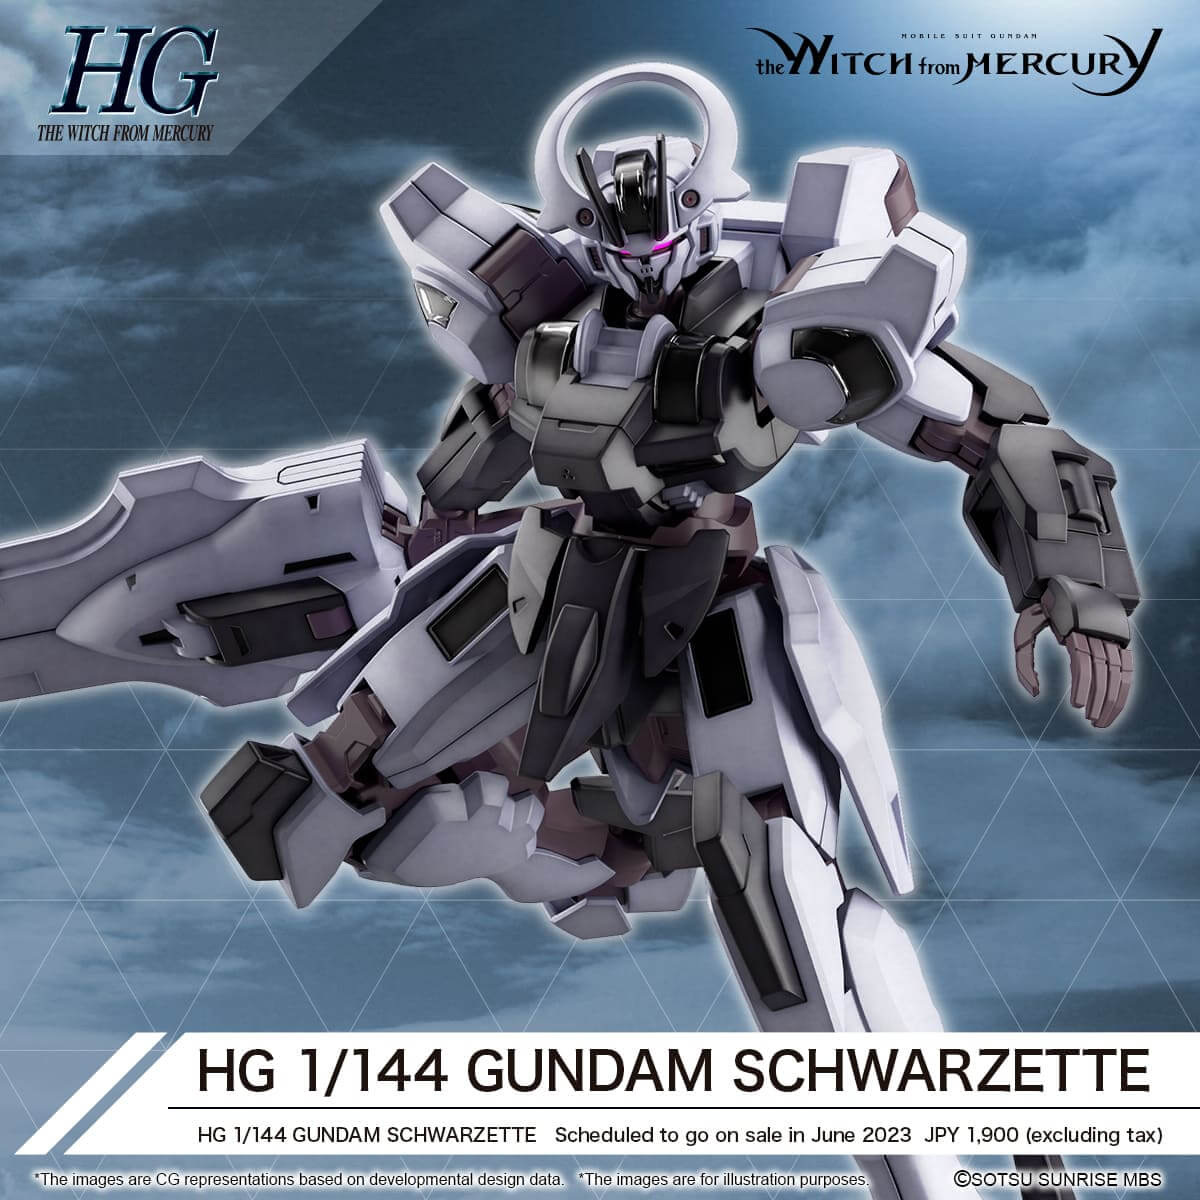 Mobile Suit Gundam The Witch From Mercury Model Kit Figure HG Gundam Schwarzette 1/144 13cm - Model Kit - Bandai Model Kit - Hobby Figures UK